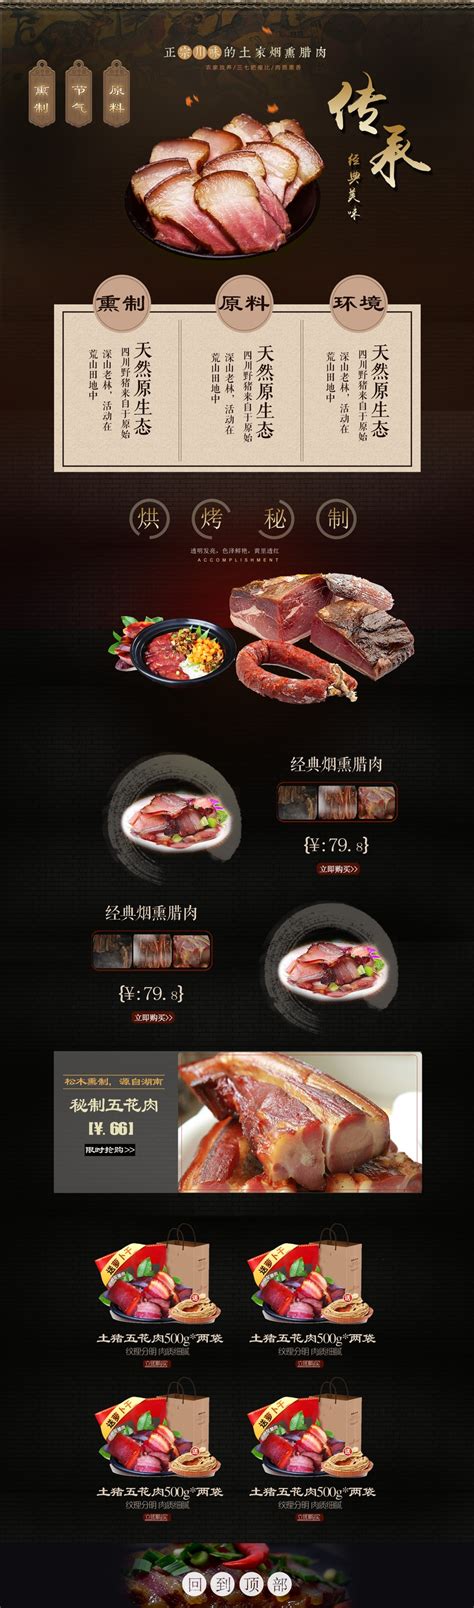 肉类名片设计模板-肉类名片模板素材下载-觅知网